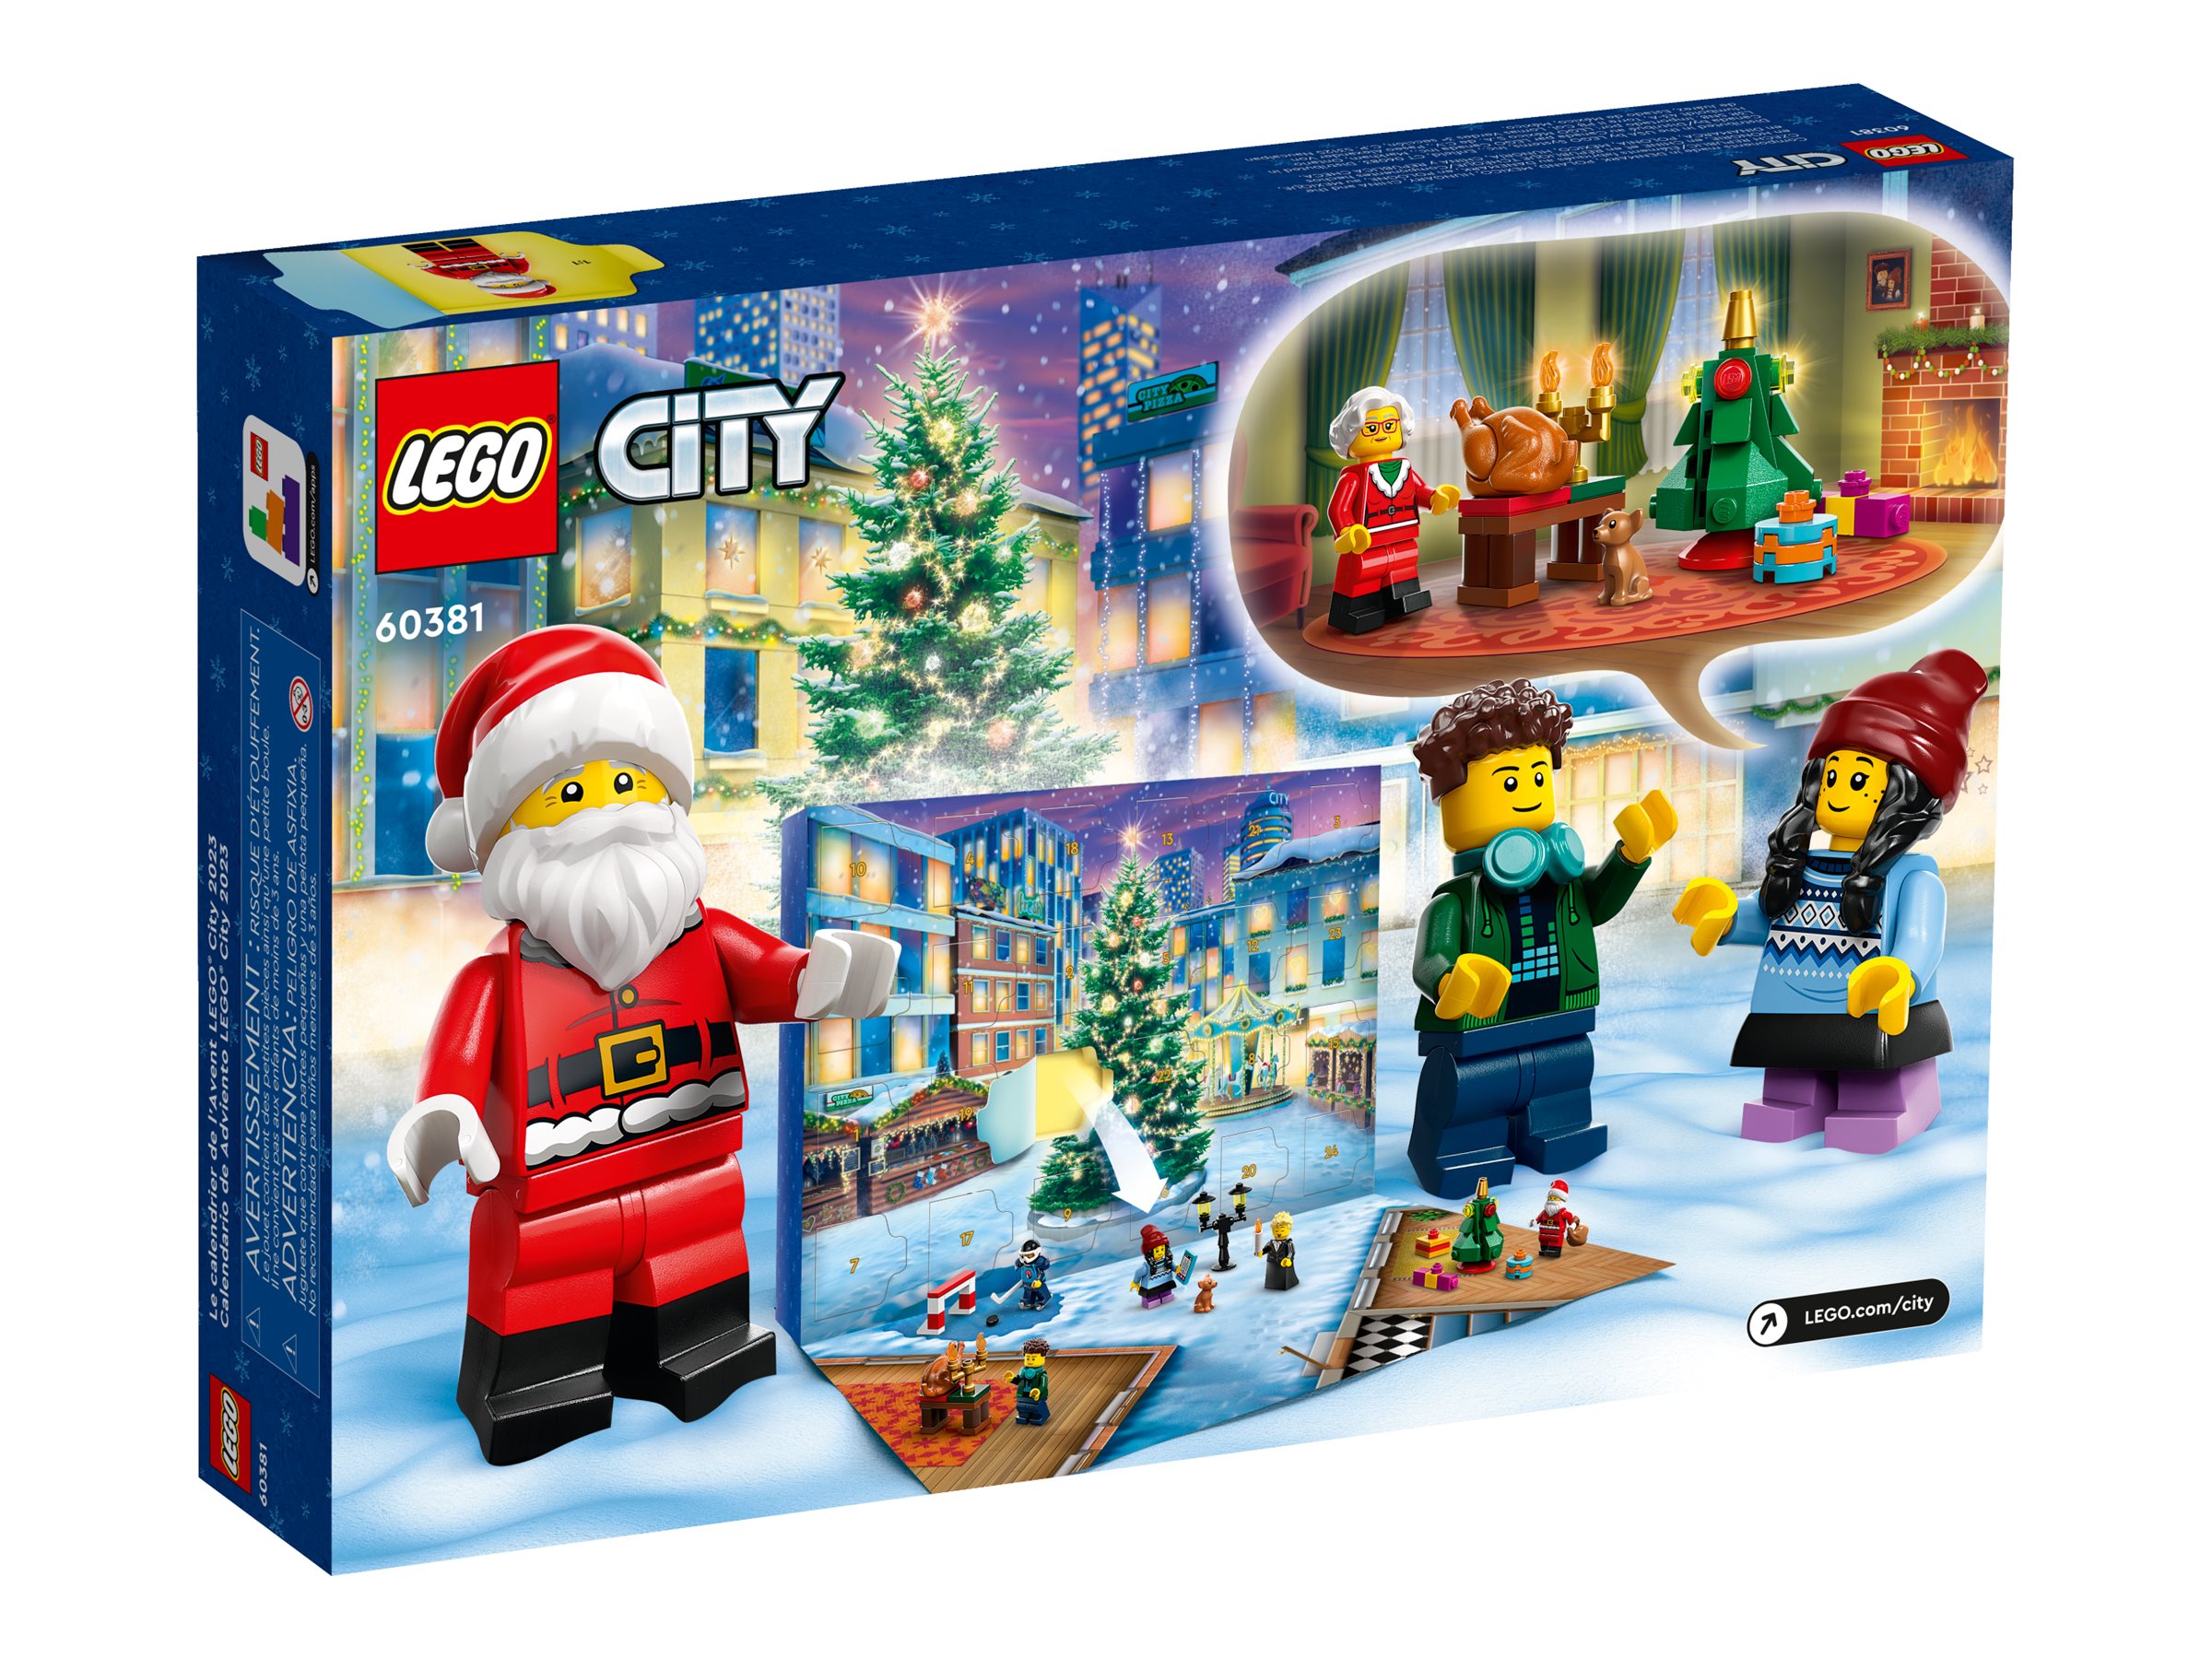 LEGO City Advent Calendar 2025